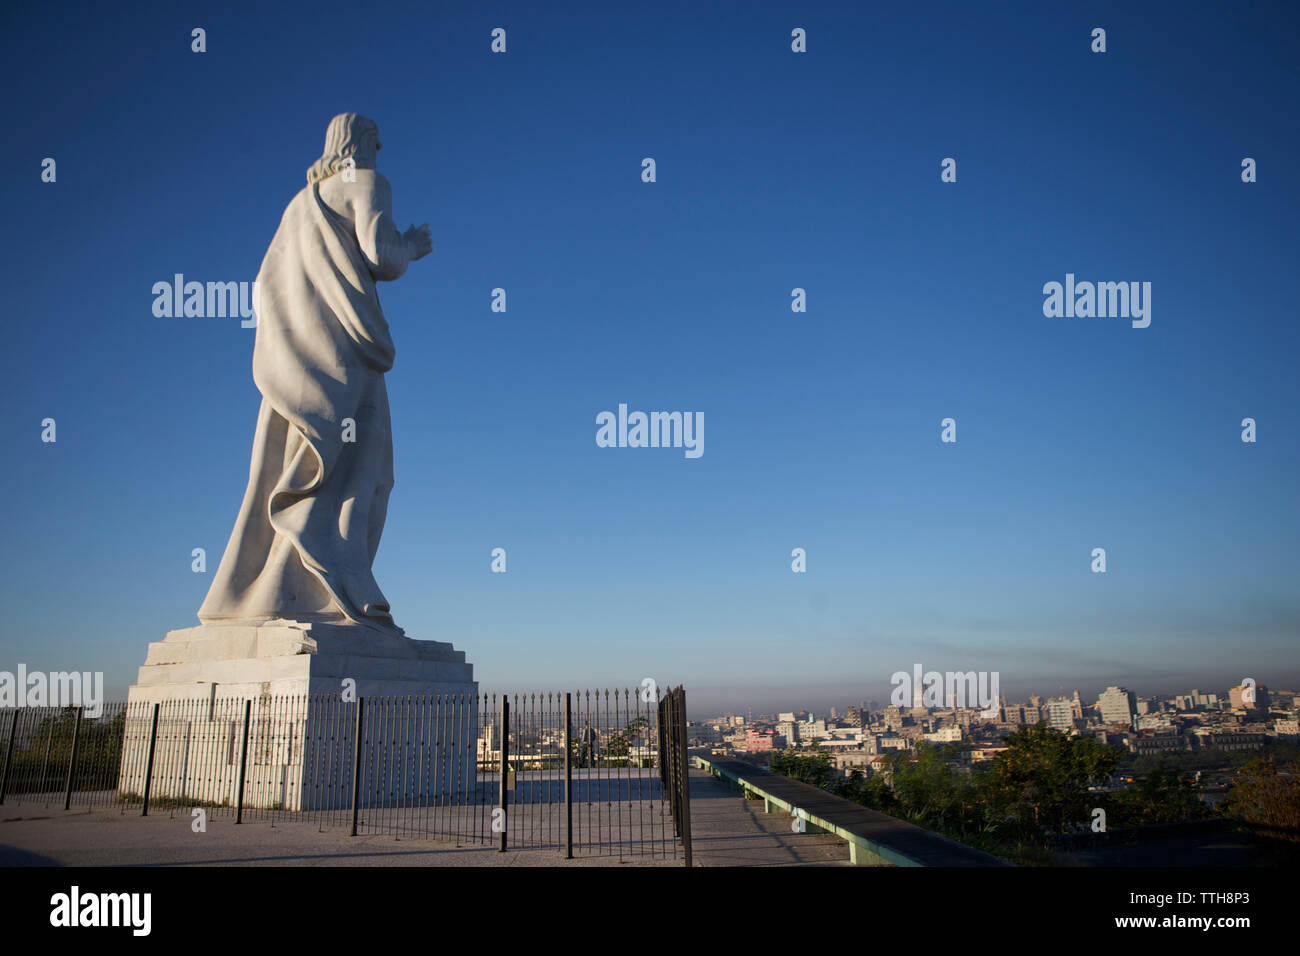 Low angle view of Jesus Christ statue contre ciel bleu clair en ville Banque D'Images